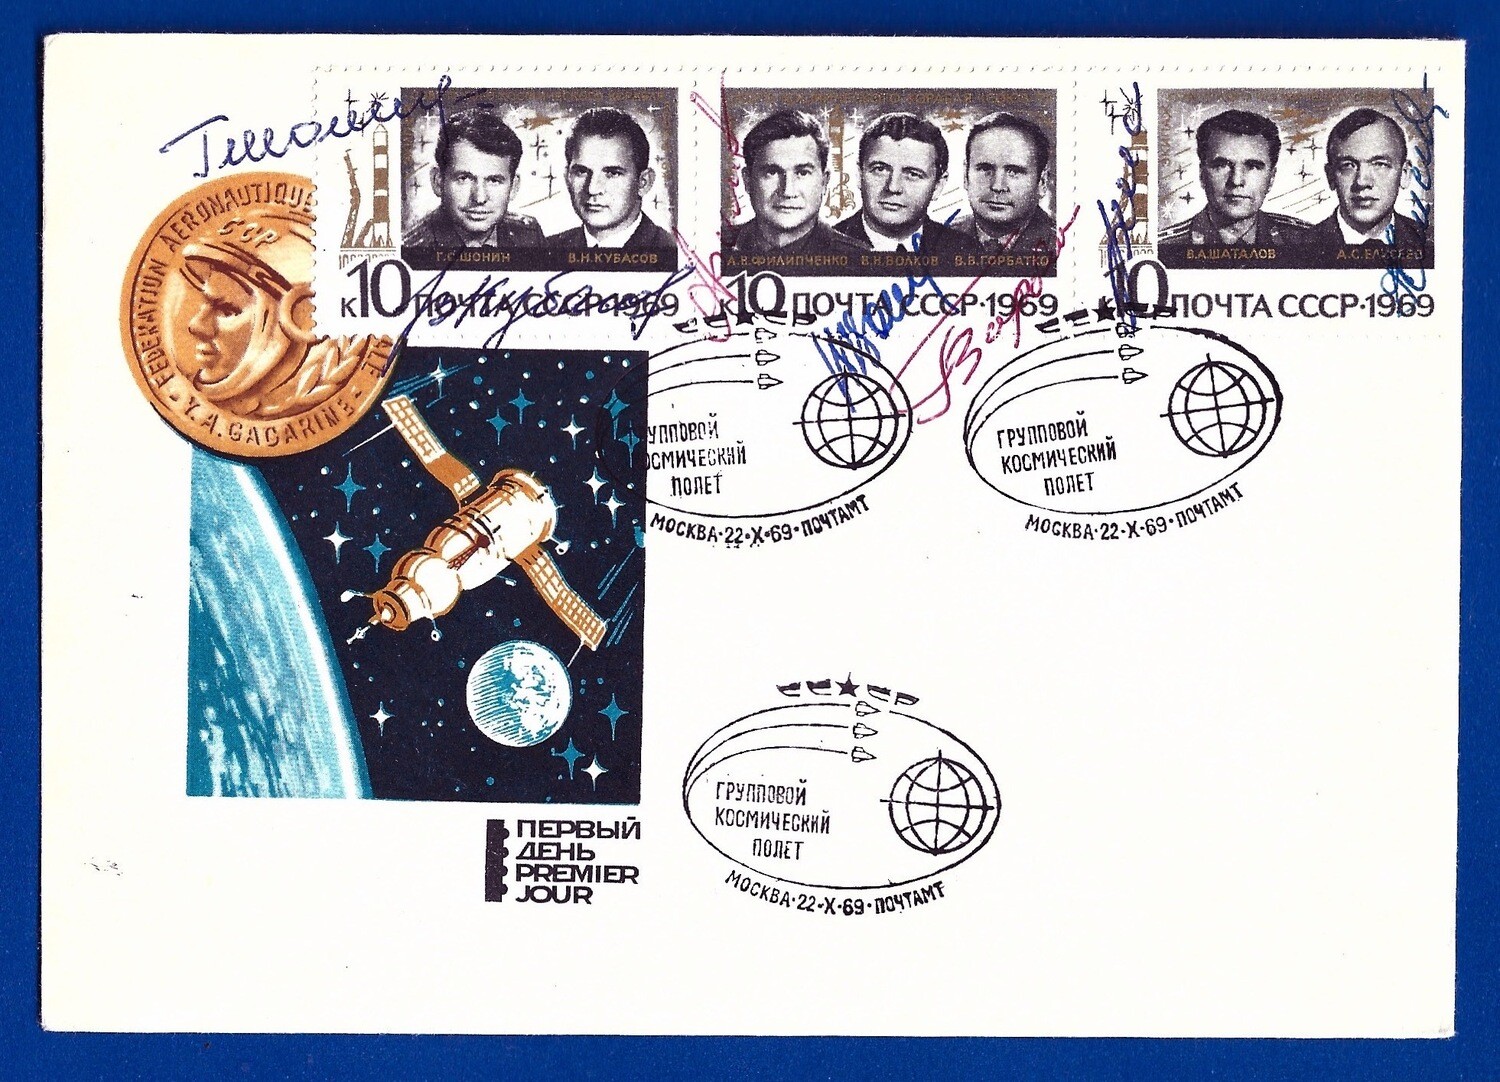 1969 Soyuz 6, Soyuz 7, Soyuz 8 crew signed cover